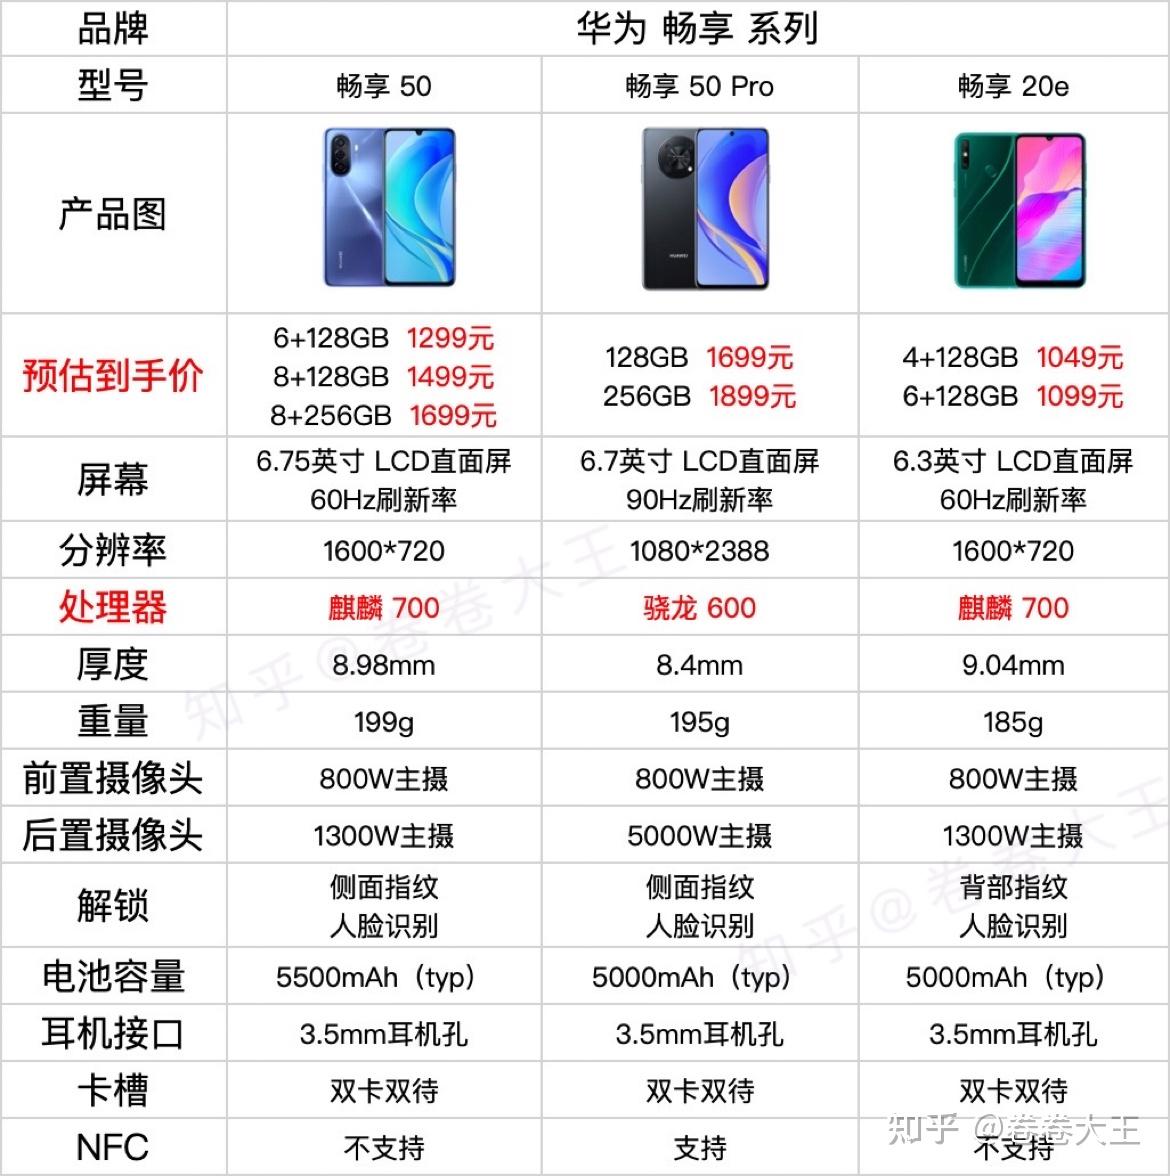 2023年 华为系列手机推荐:华为手机选购指南,华为手机优惠活动是什么?